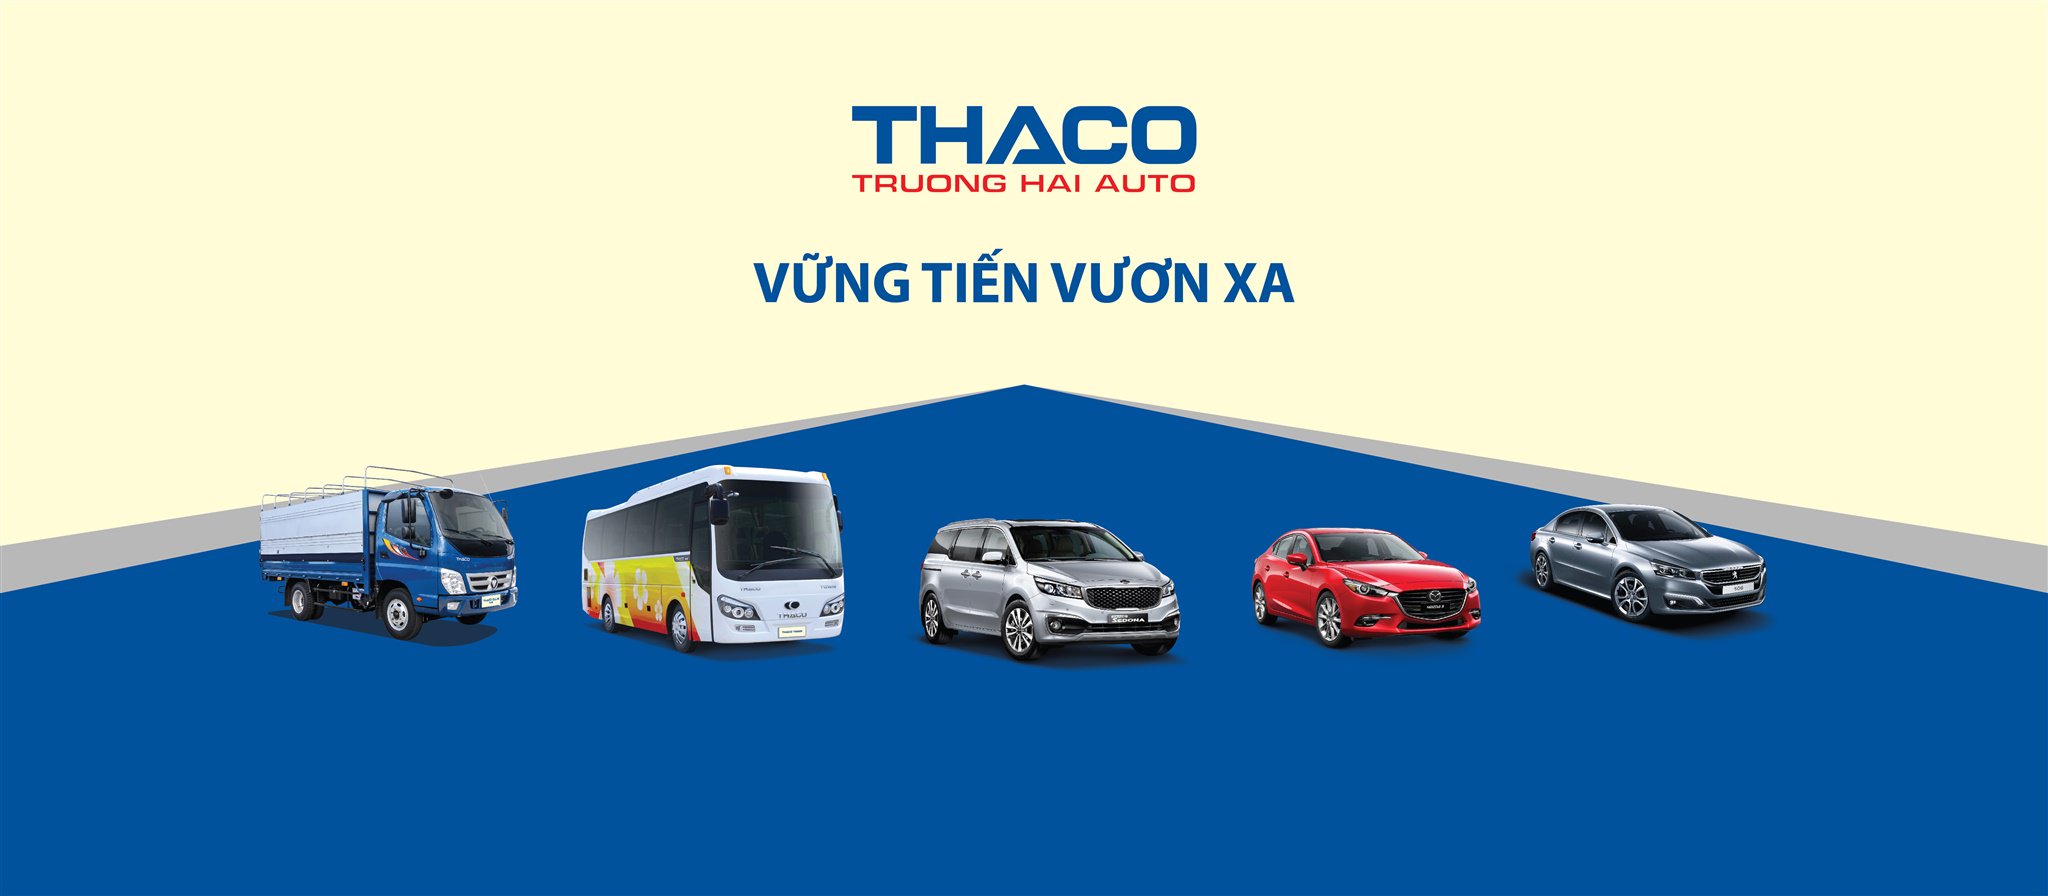 Bán phụ tùng xe tải thaco auman chính hãng giá cạnh tranh nhất Hà Nội   0962803686